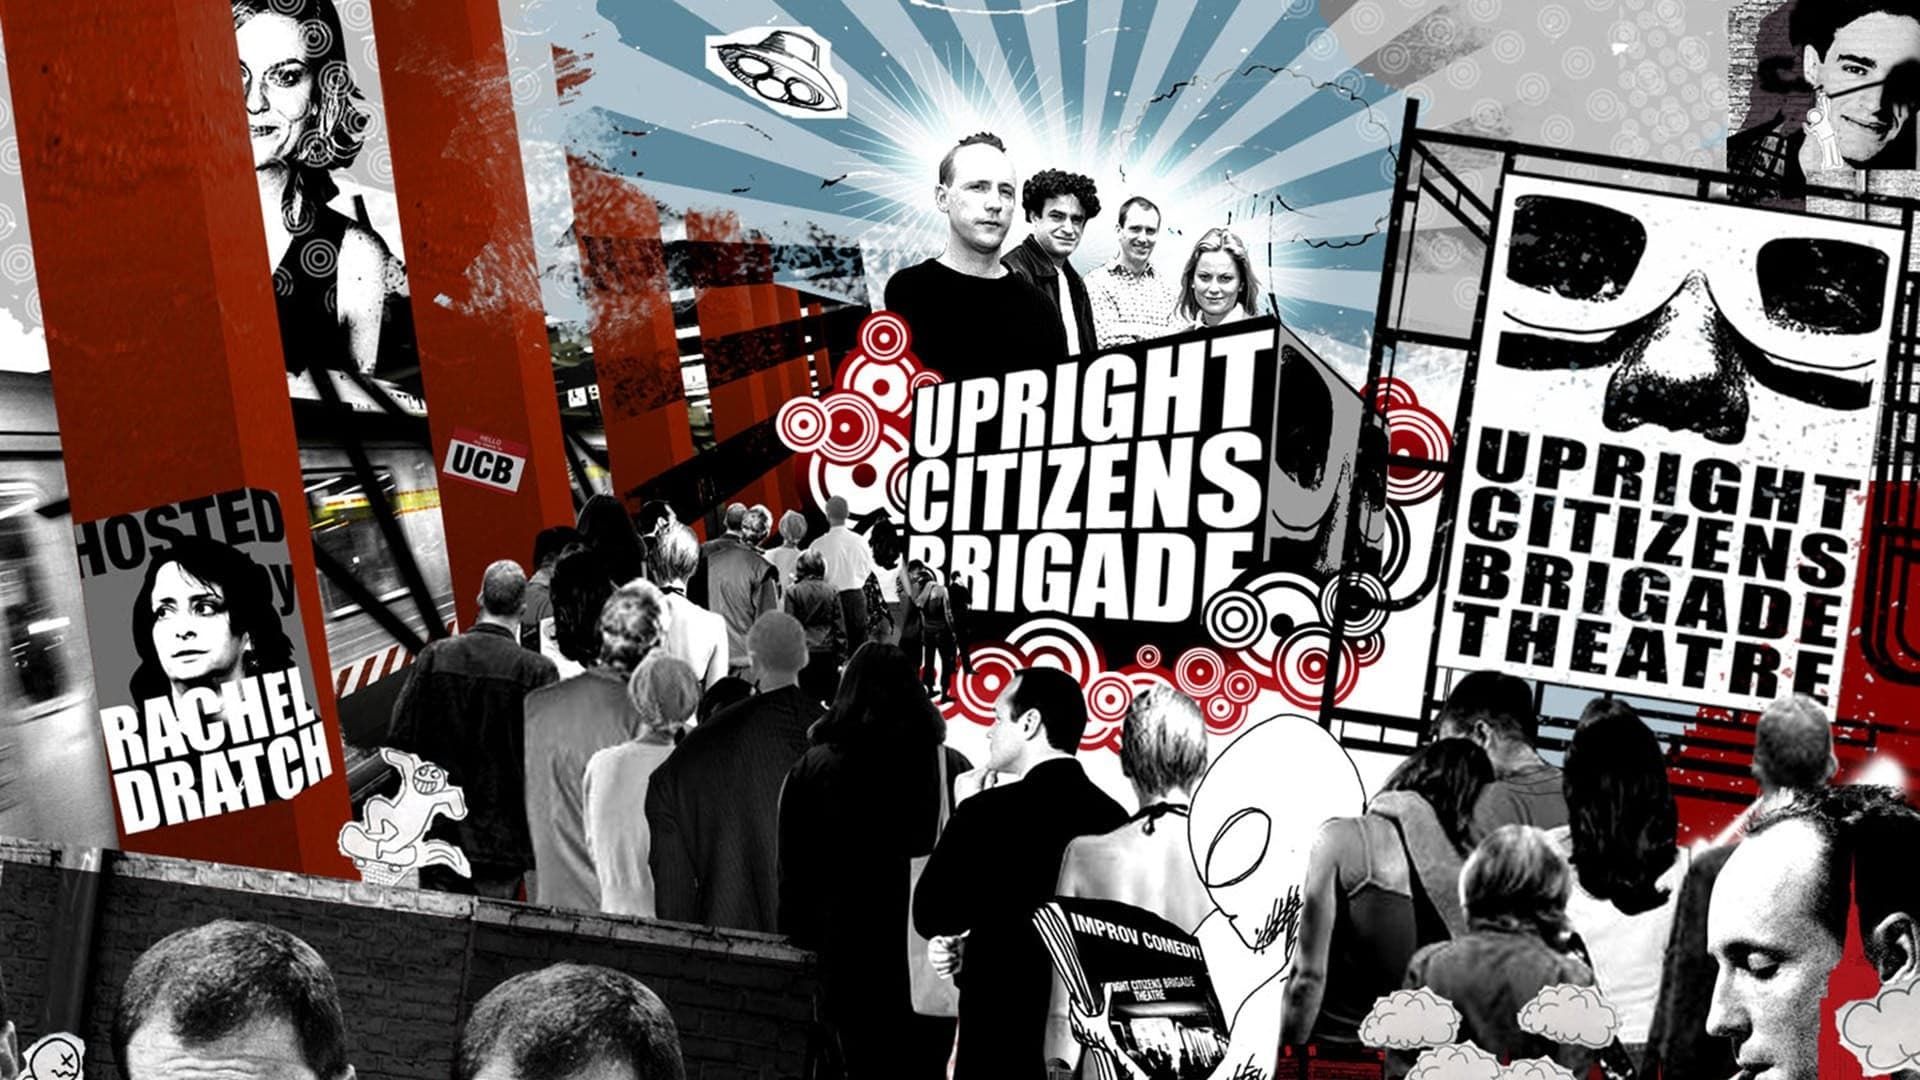 Upright Citizens Brigade: Asssscat background